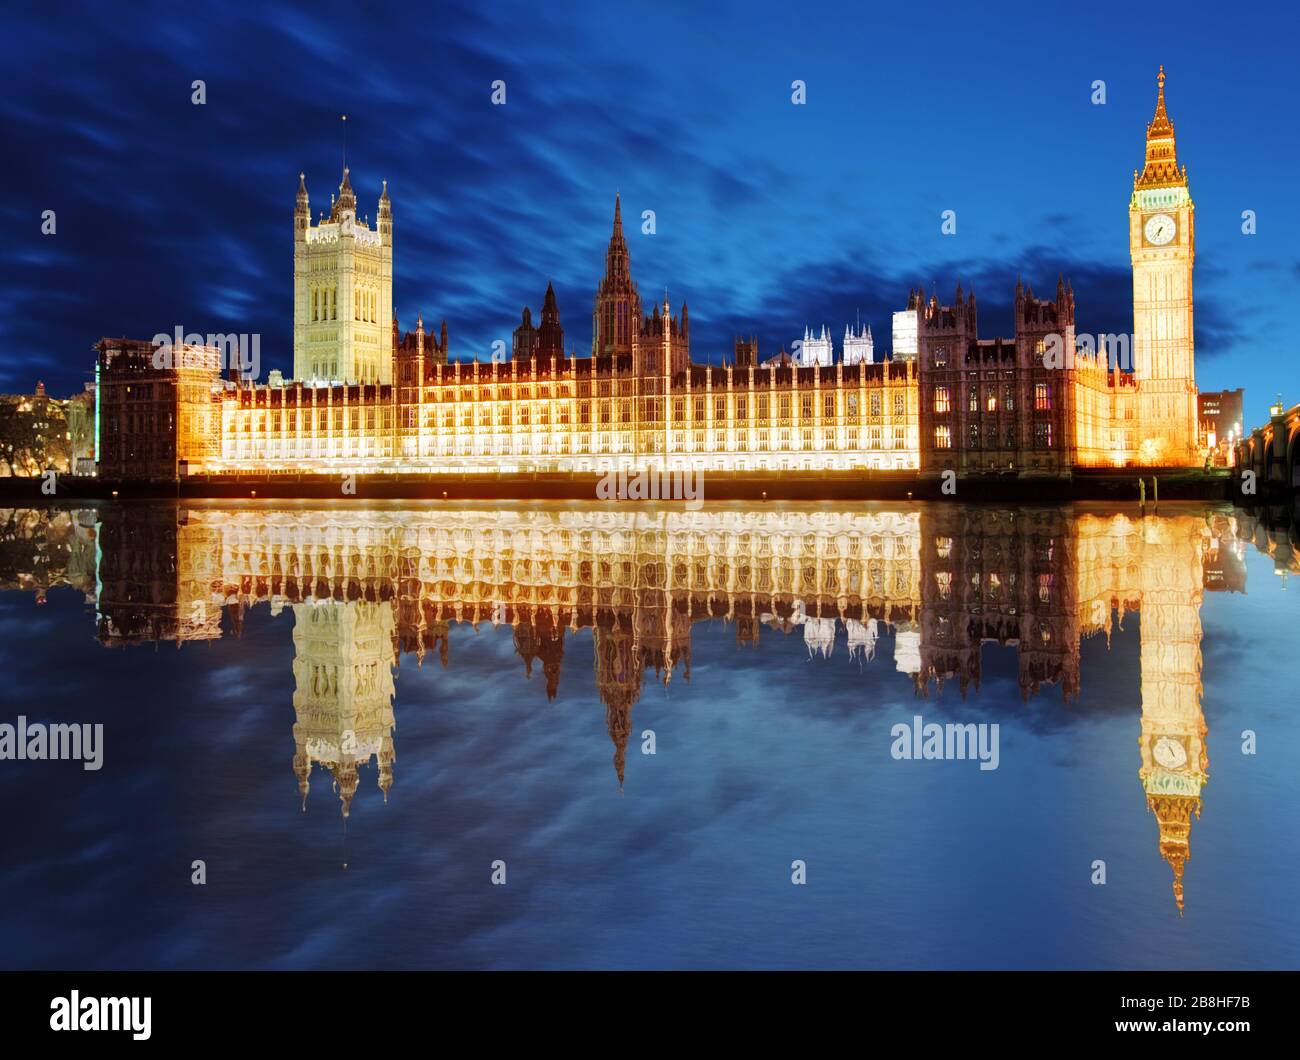 Houses of parliament - Big ben, england, UK Stock Photo